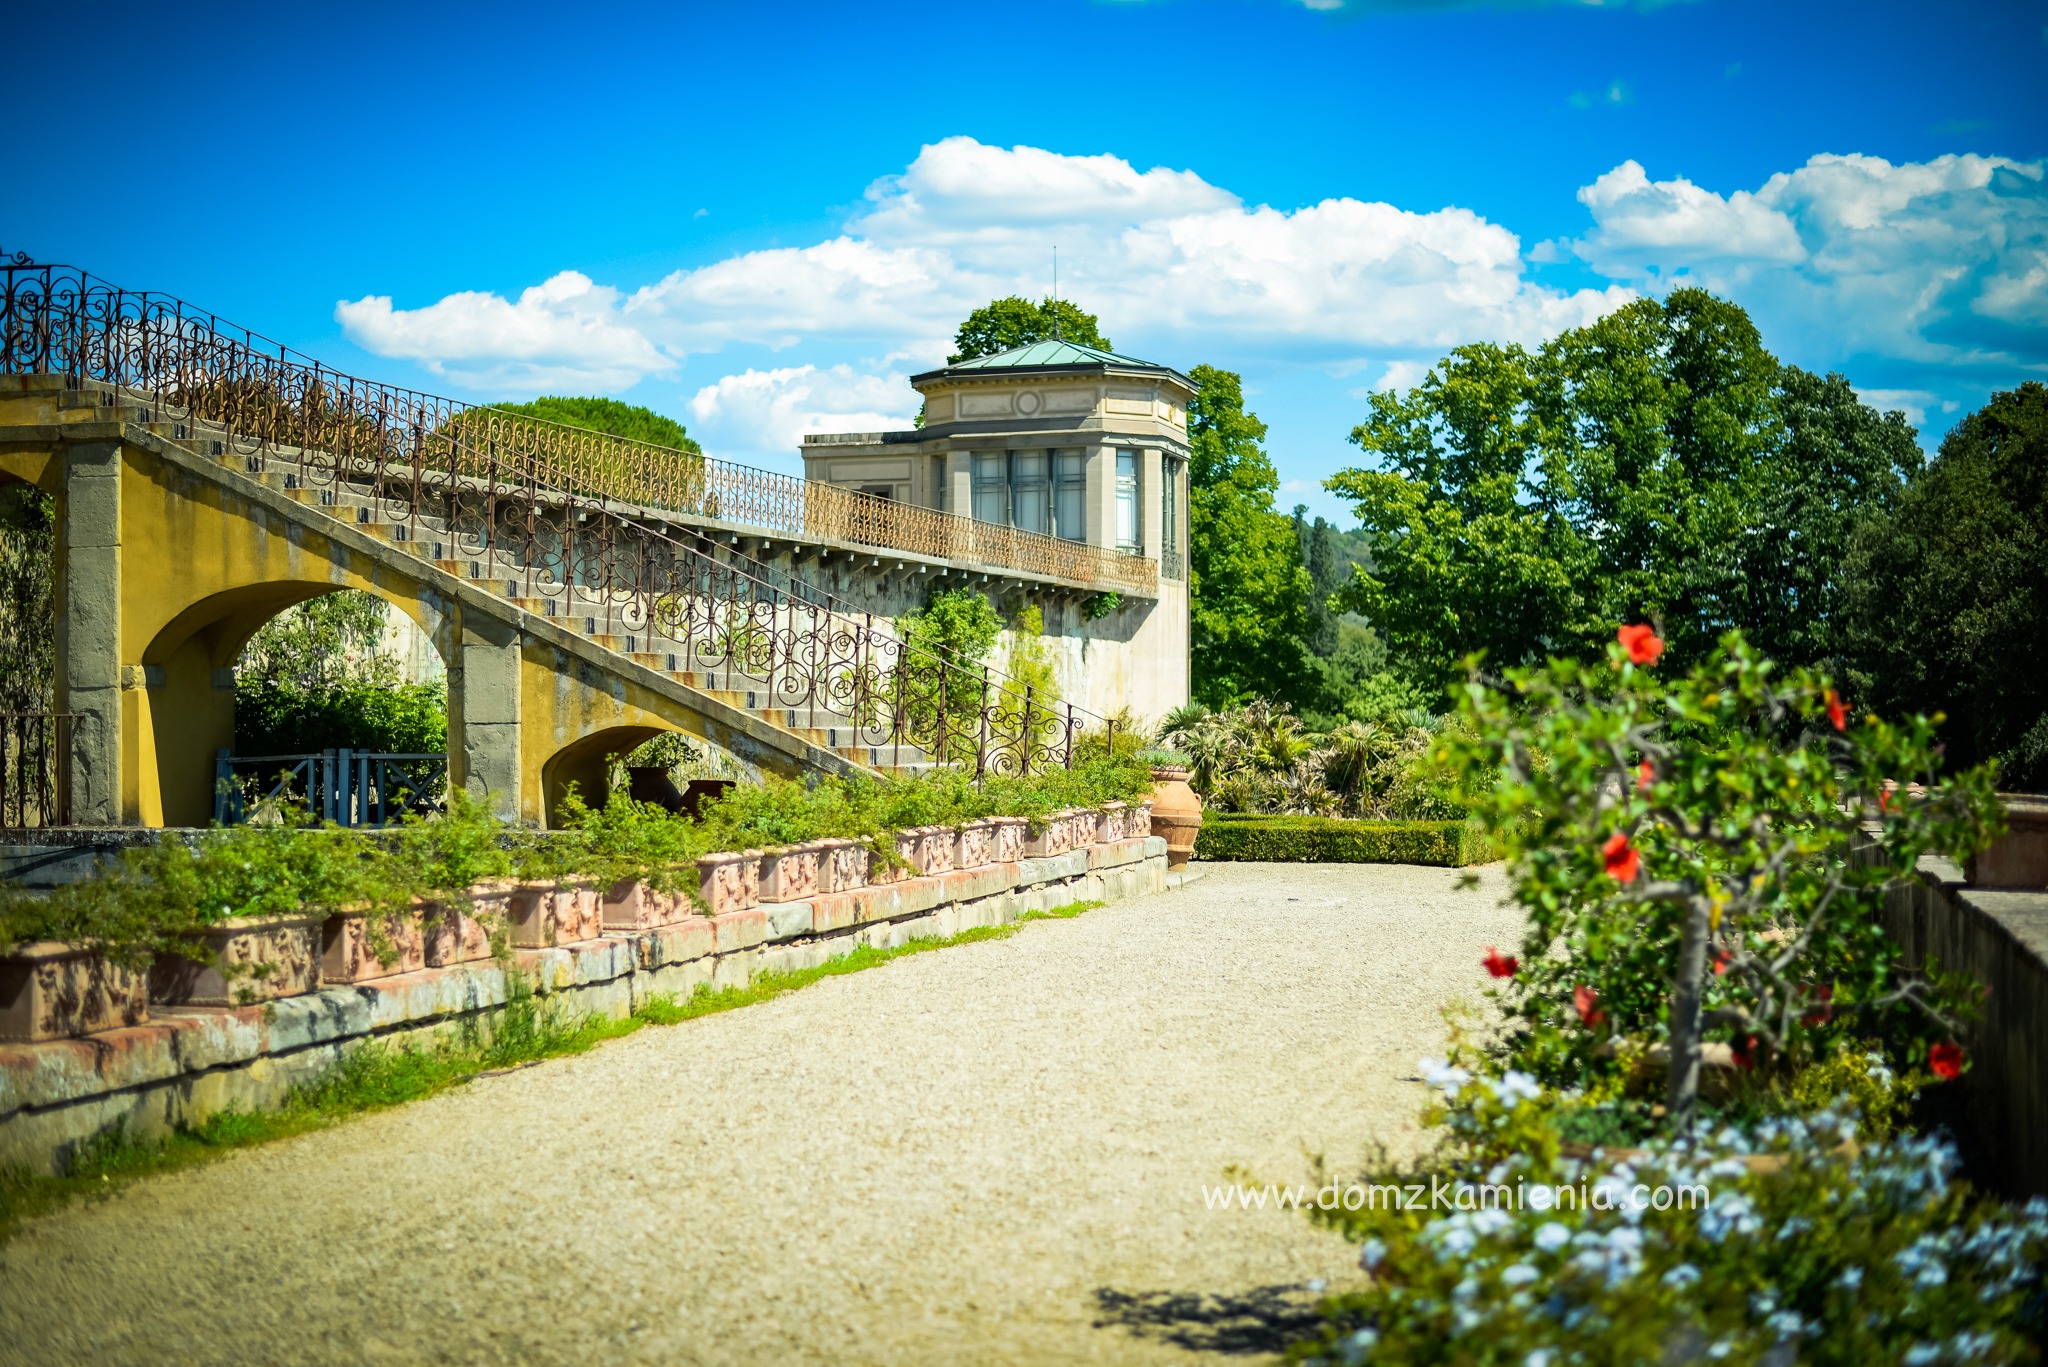 Dom z Kamienia blog Kasi Nowackiej - Villa La Petraia - Sekrety Florencji